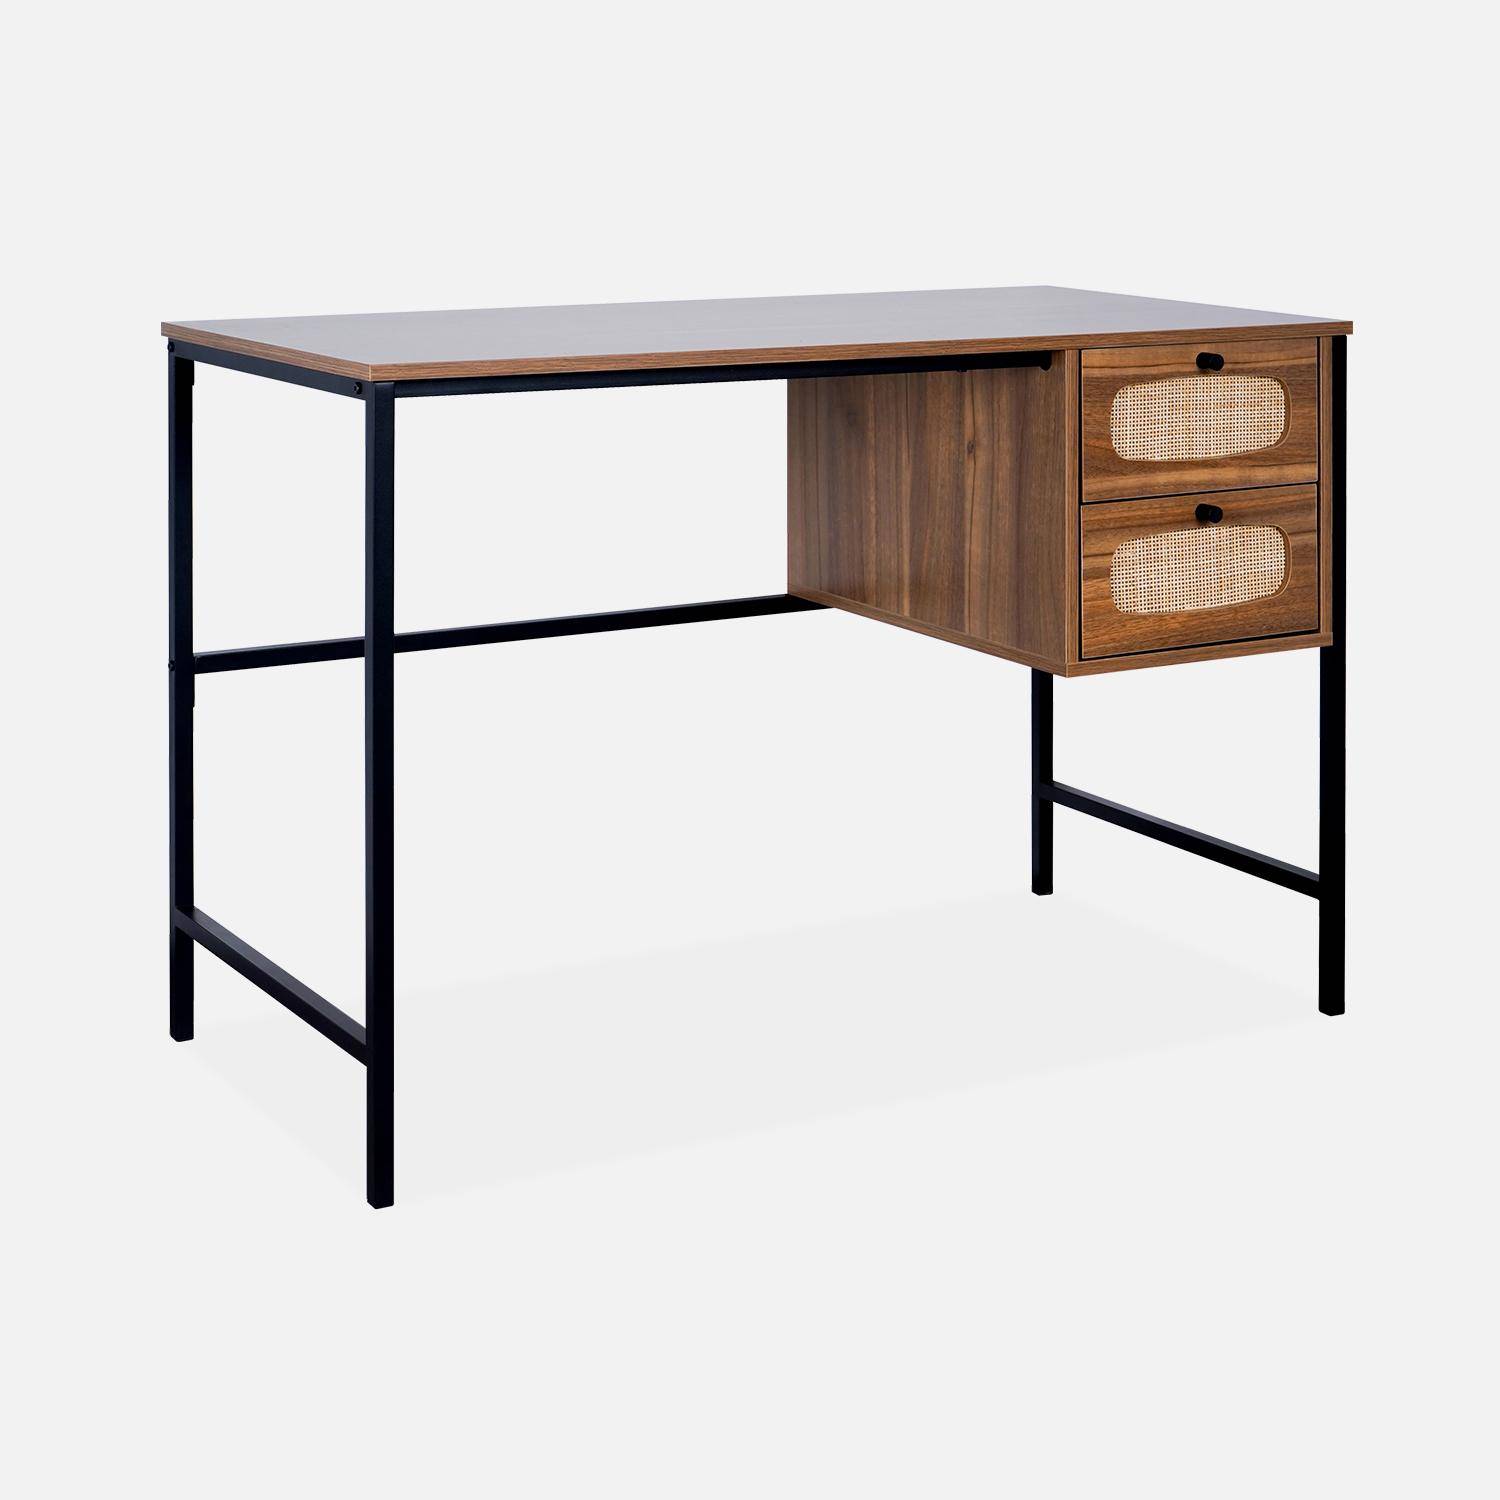 Retro-Schreibtisch mit Holzdekor und Rohrgeflecht, Gestell und Griffen aus schwarzem Metall - Retro,sweeek,Photo4